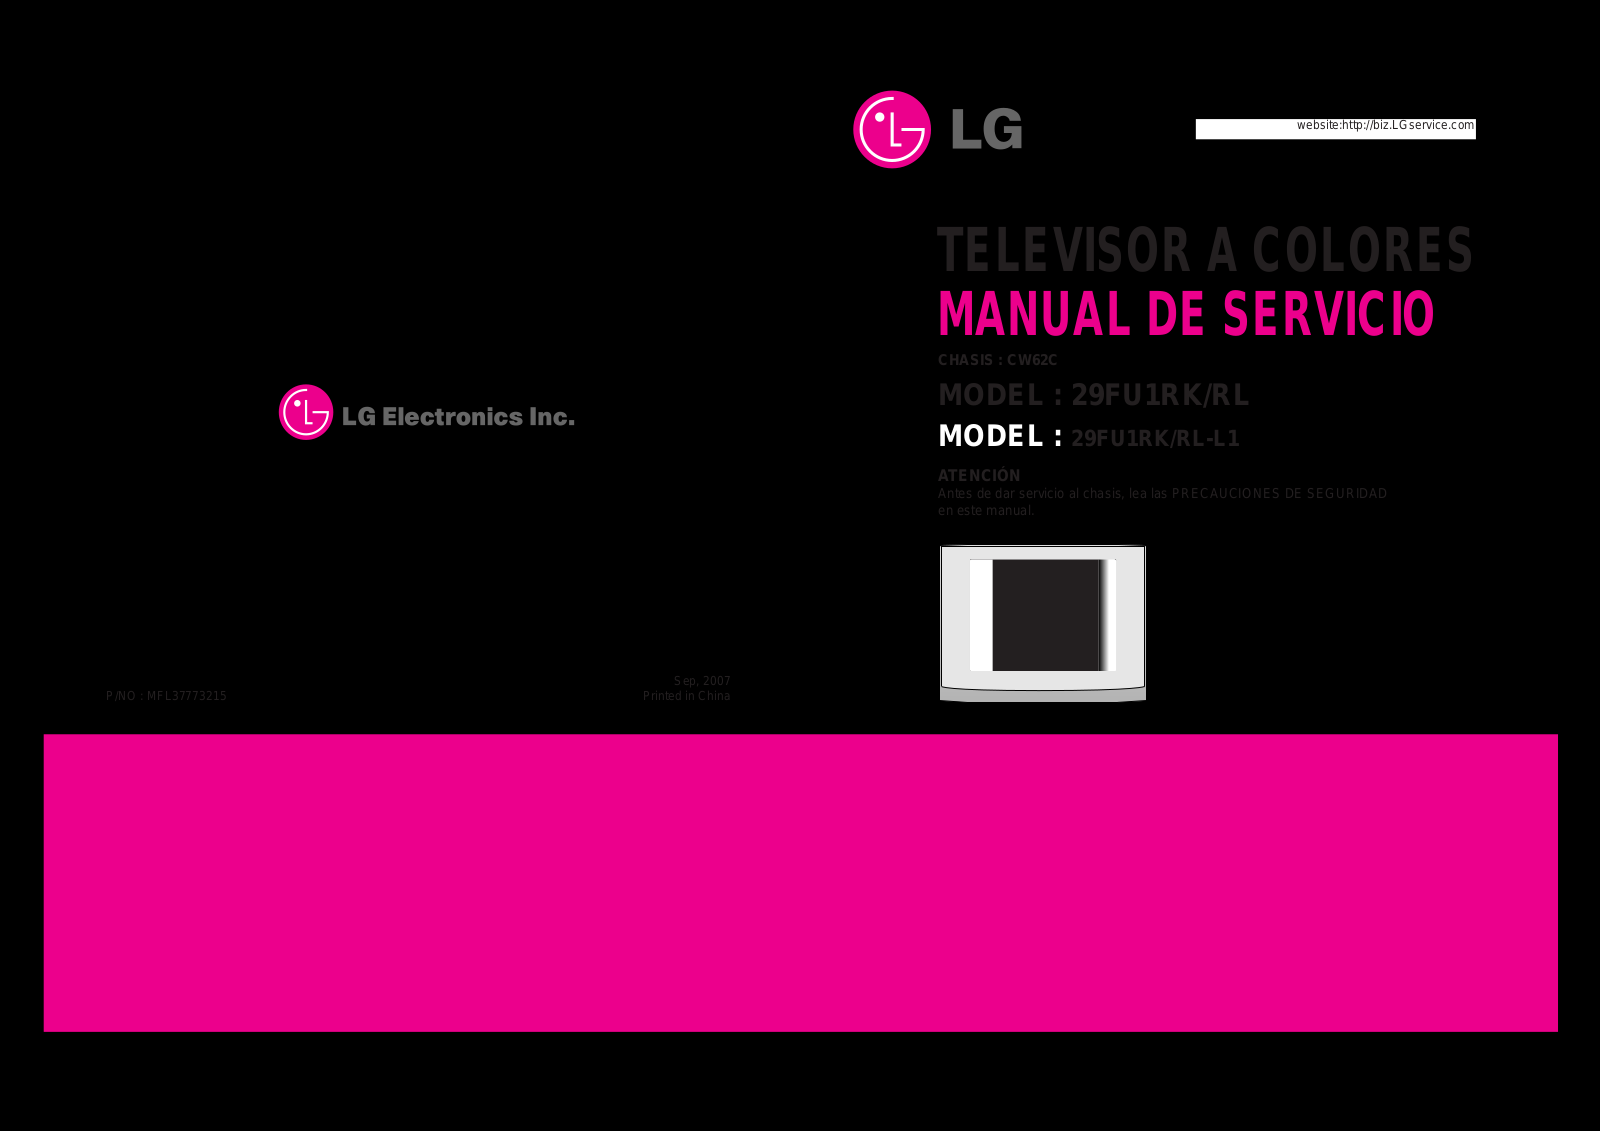 LG 29FU1RK, 29FU1RL-L1 Service Manual